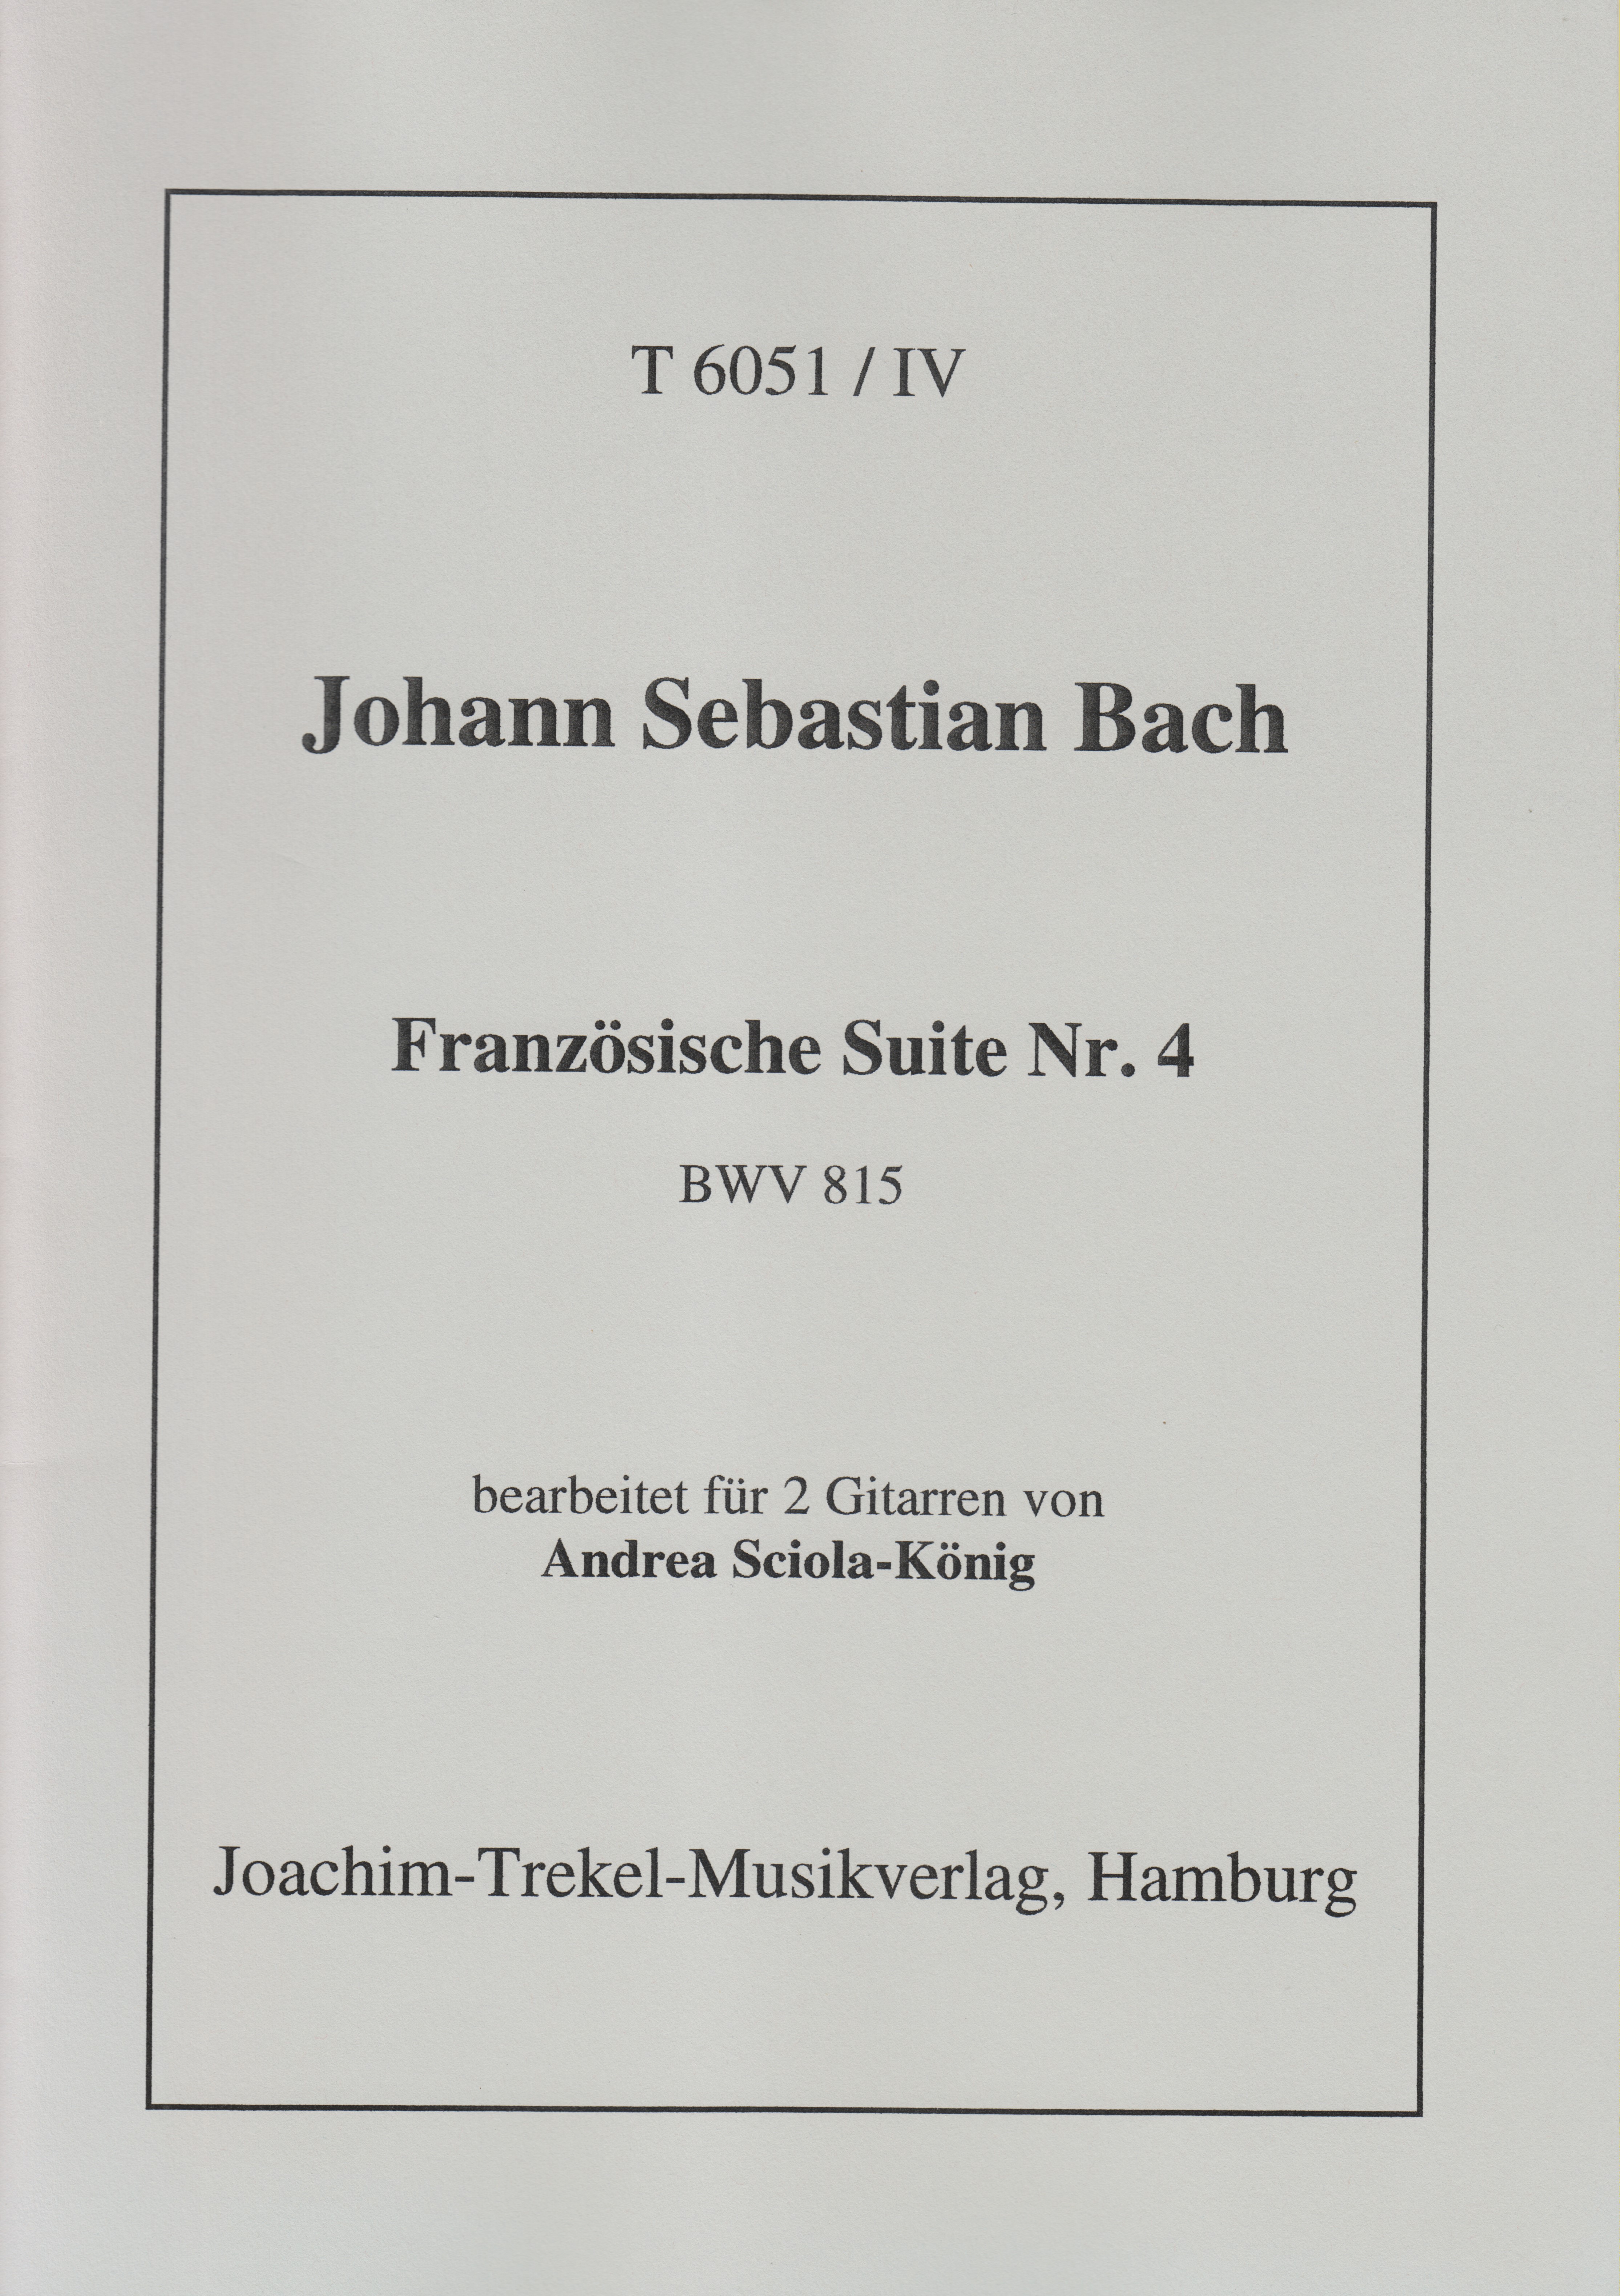 Französische Suite Nr. 4 BWV 815